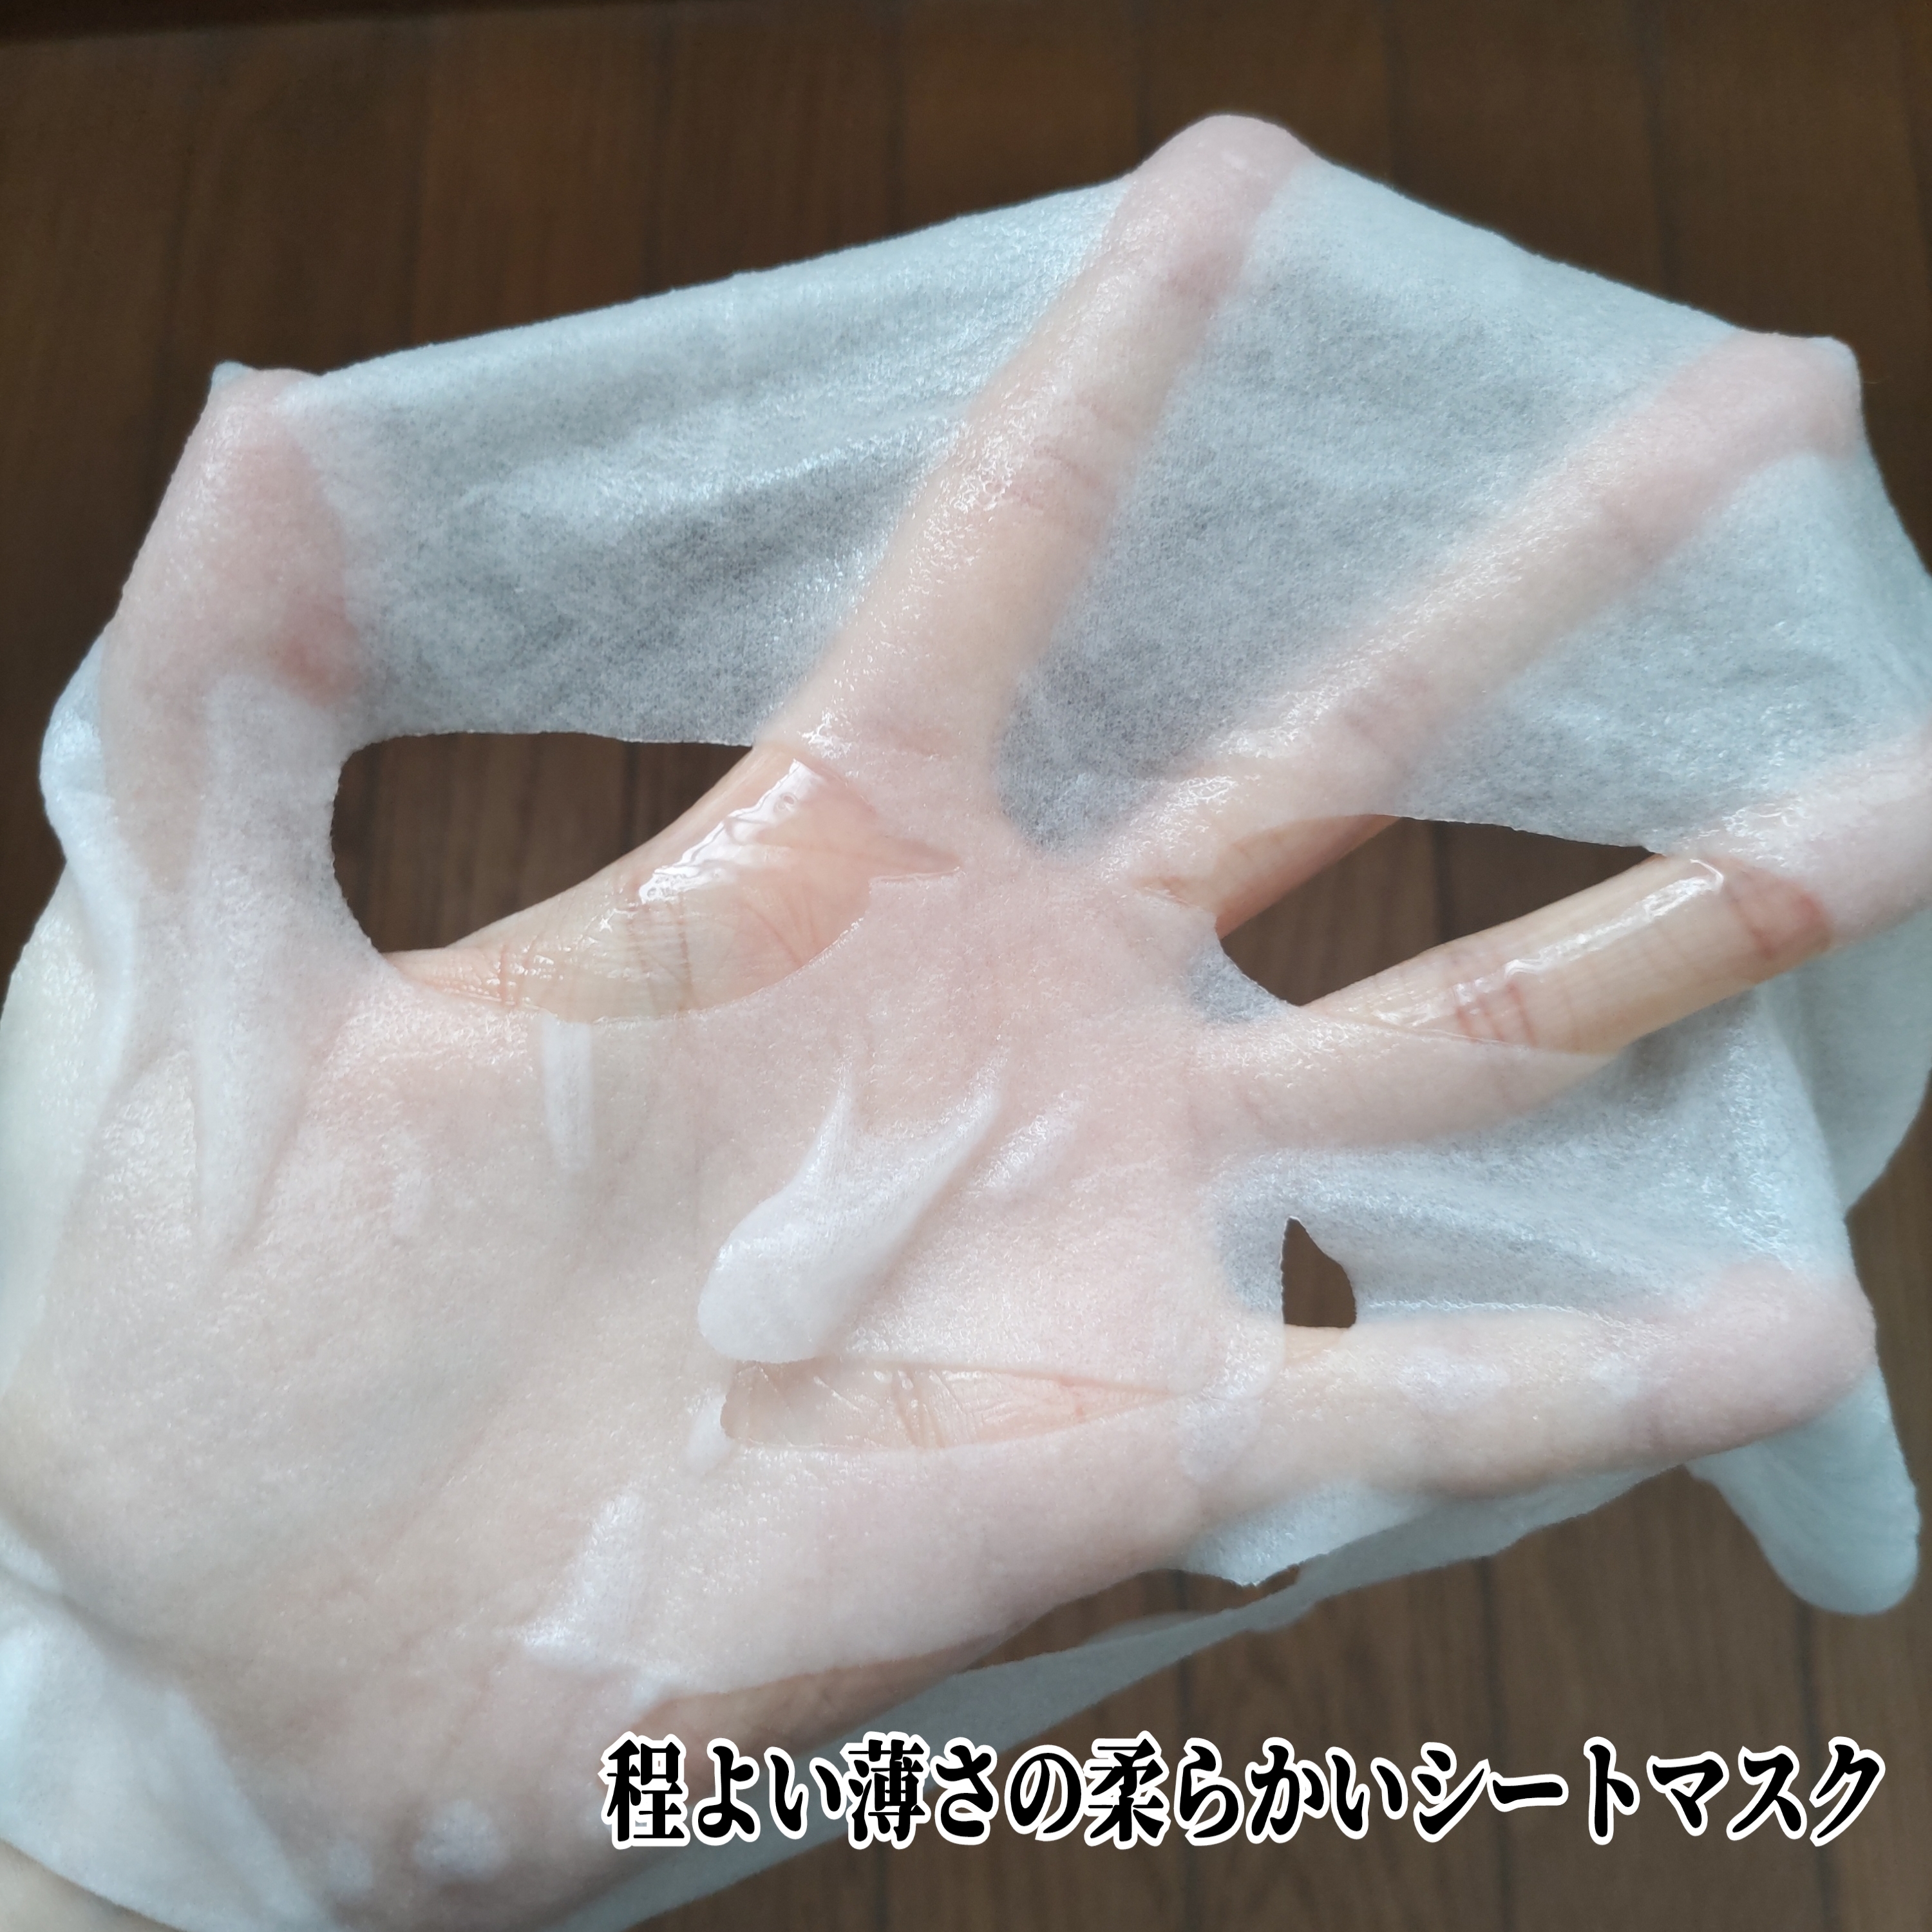 YURICO5 2 in 1 CICA フェイスマスクを使ったYuKaRi♡さんのクチコミ画像4